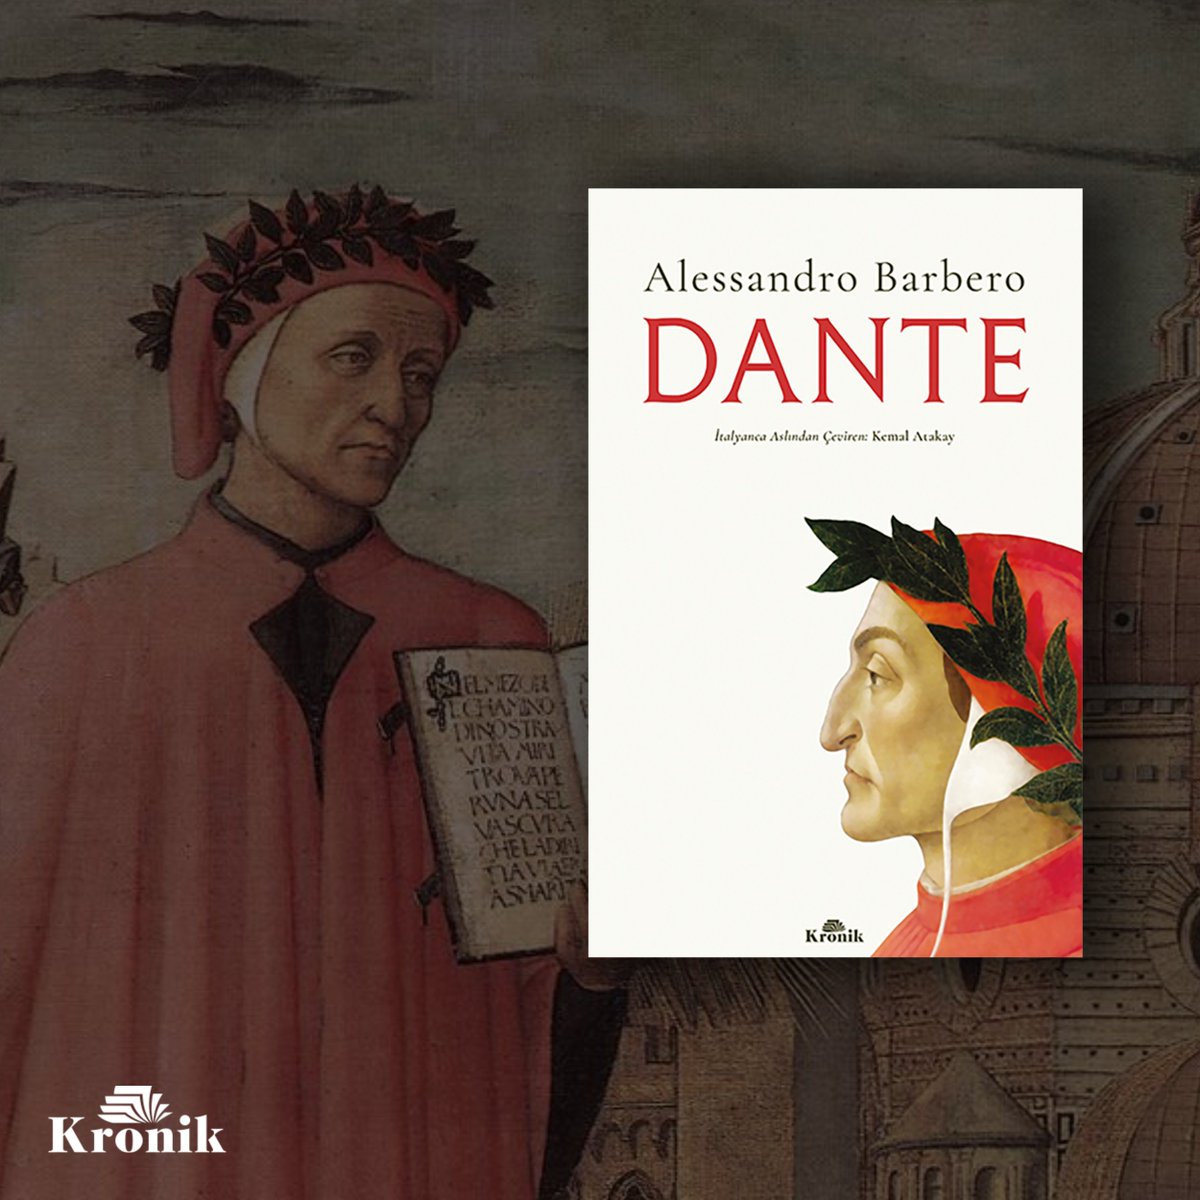 Edebiyat tarihinin en büyük eserlerinden biri olarak kabul edilen İlahi Komedya'ya imza attı... Ortaçağ'ın en unutulmaz aşk şiirlerini yazdı... Edebiyatçıların dünyasına girebilmek için büyük zorluklara katlandı: Dante Alighieri... kronikkitap.com/kitap/dante